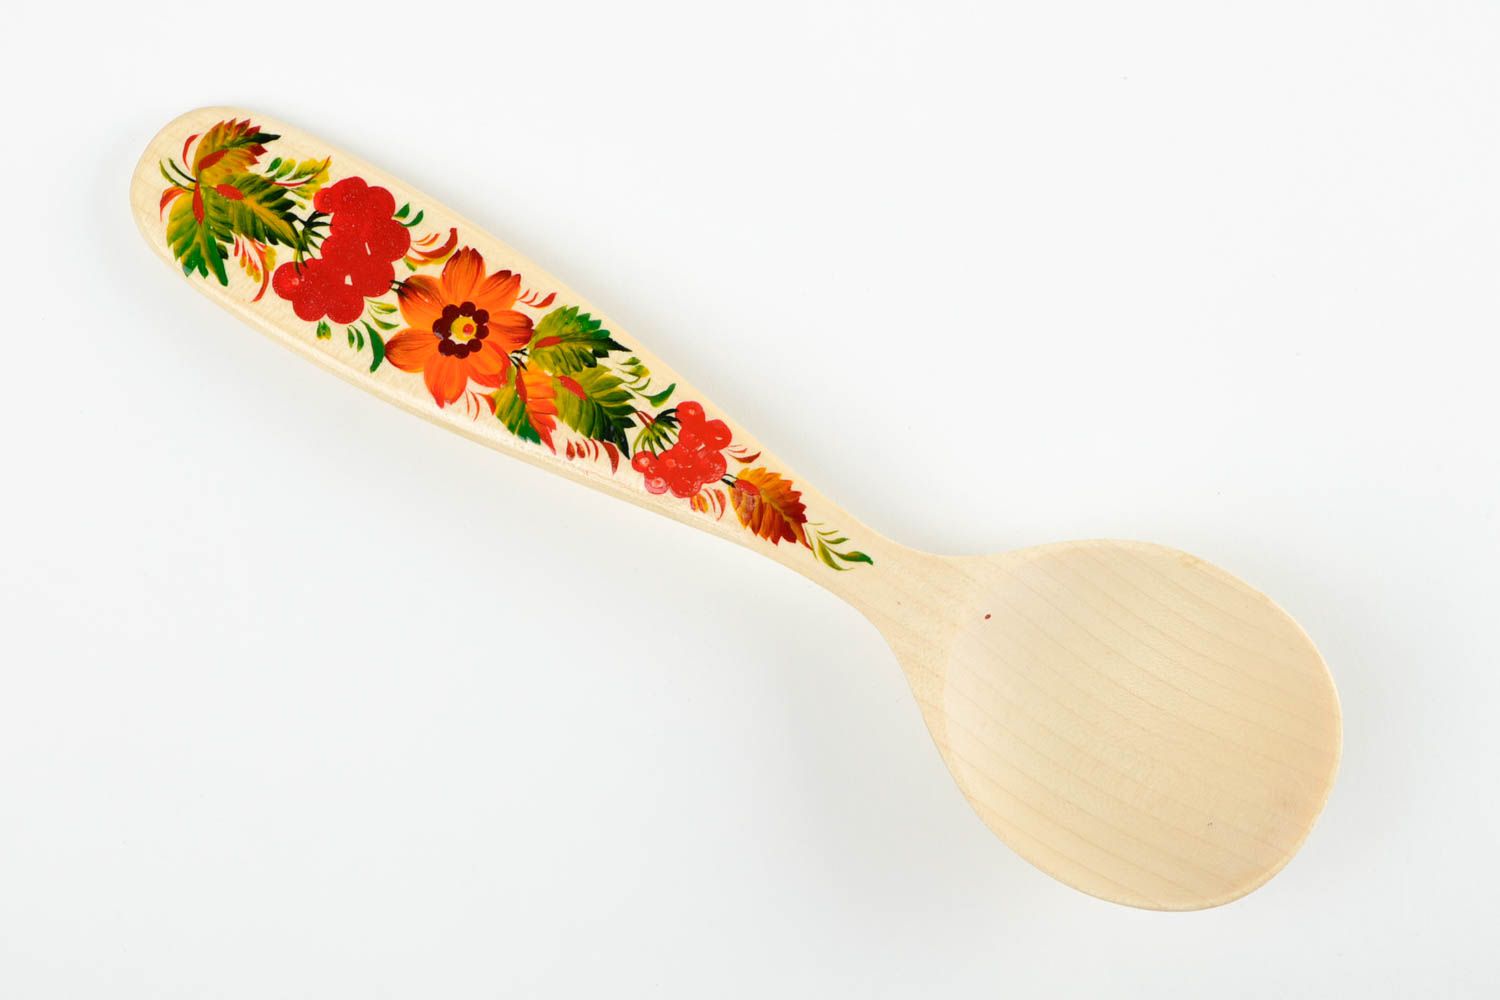 Посуда ручной работы аксессуар для кухни Петриковская роспись деревянная посуда фото 3